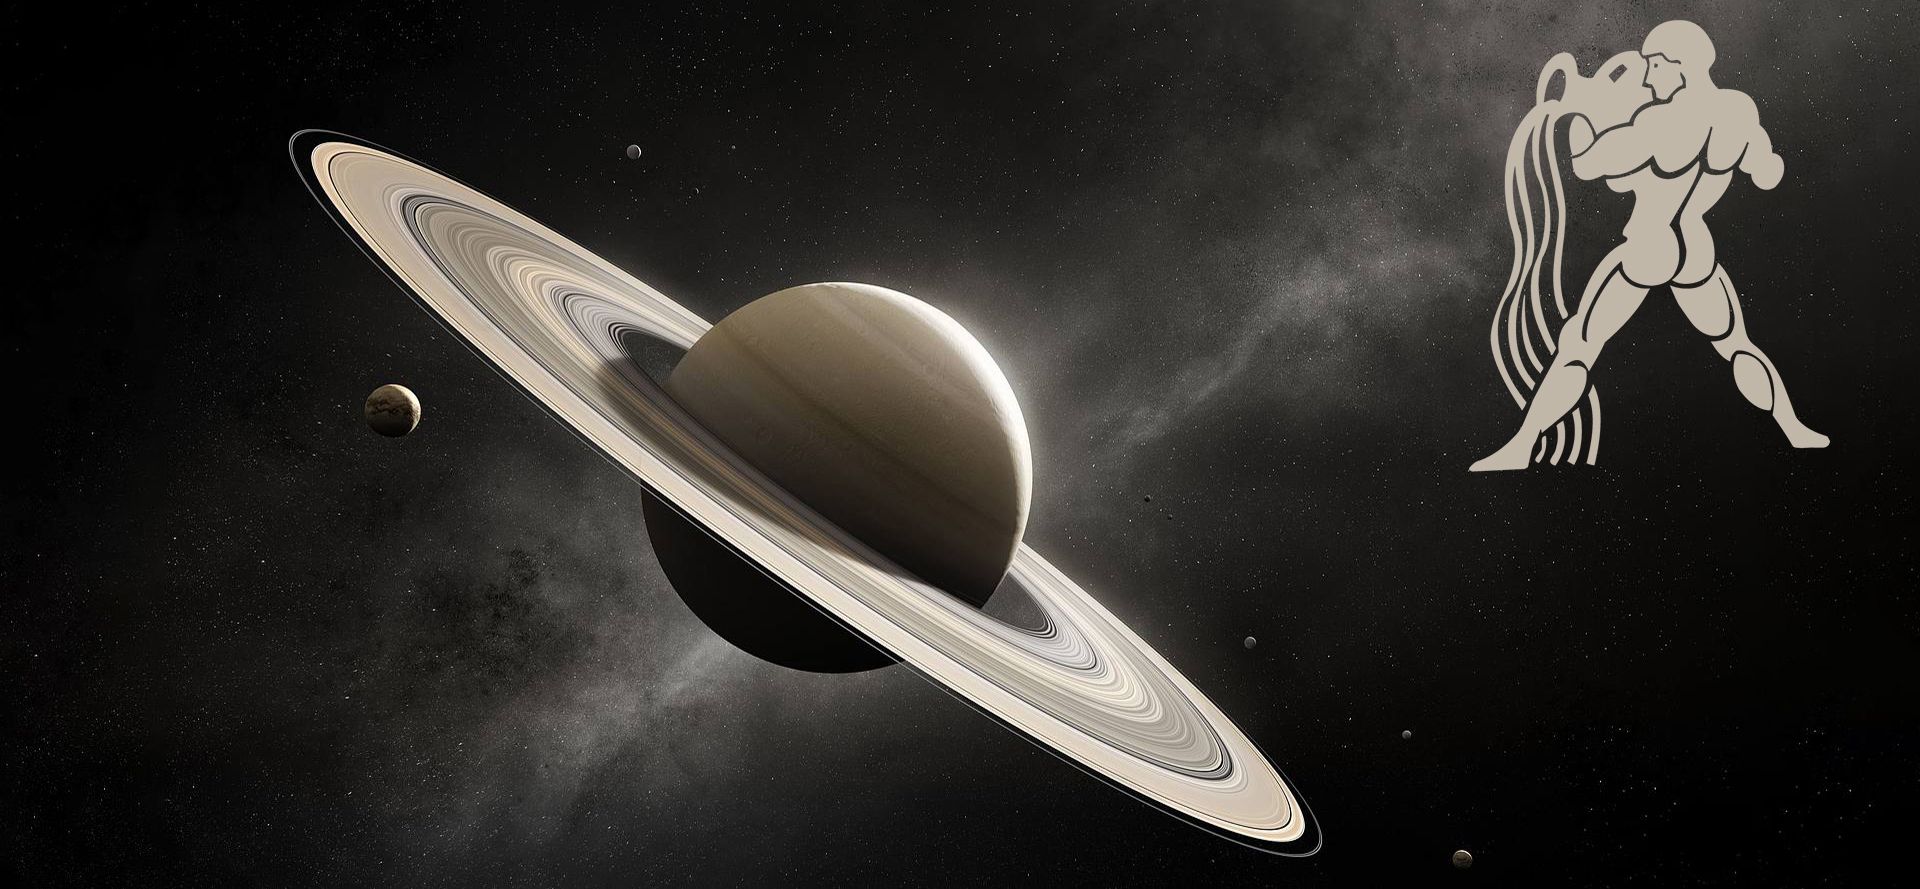 Saturn in Aquarius.